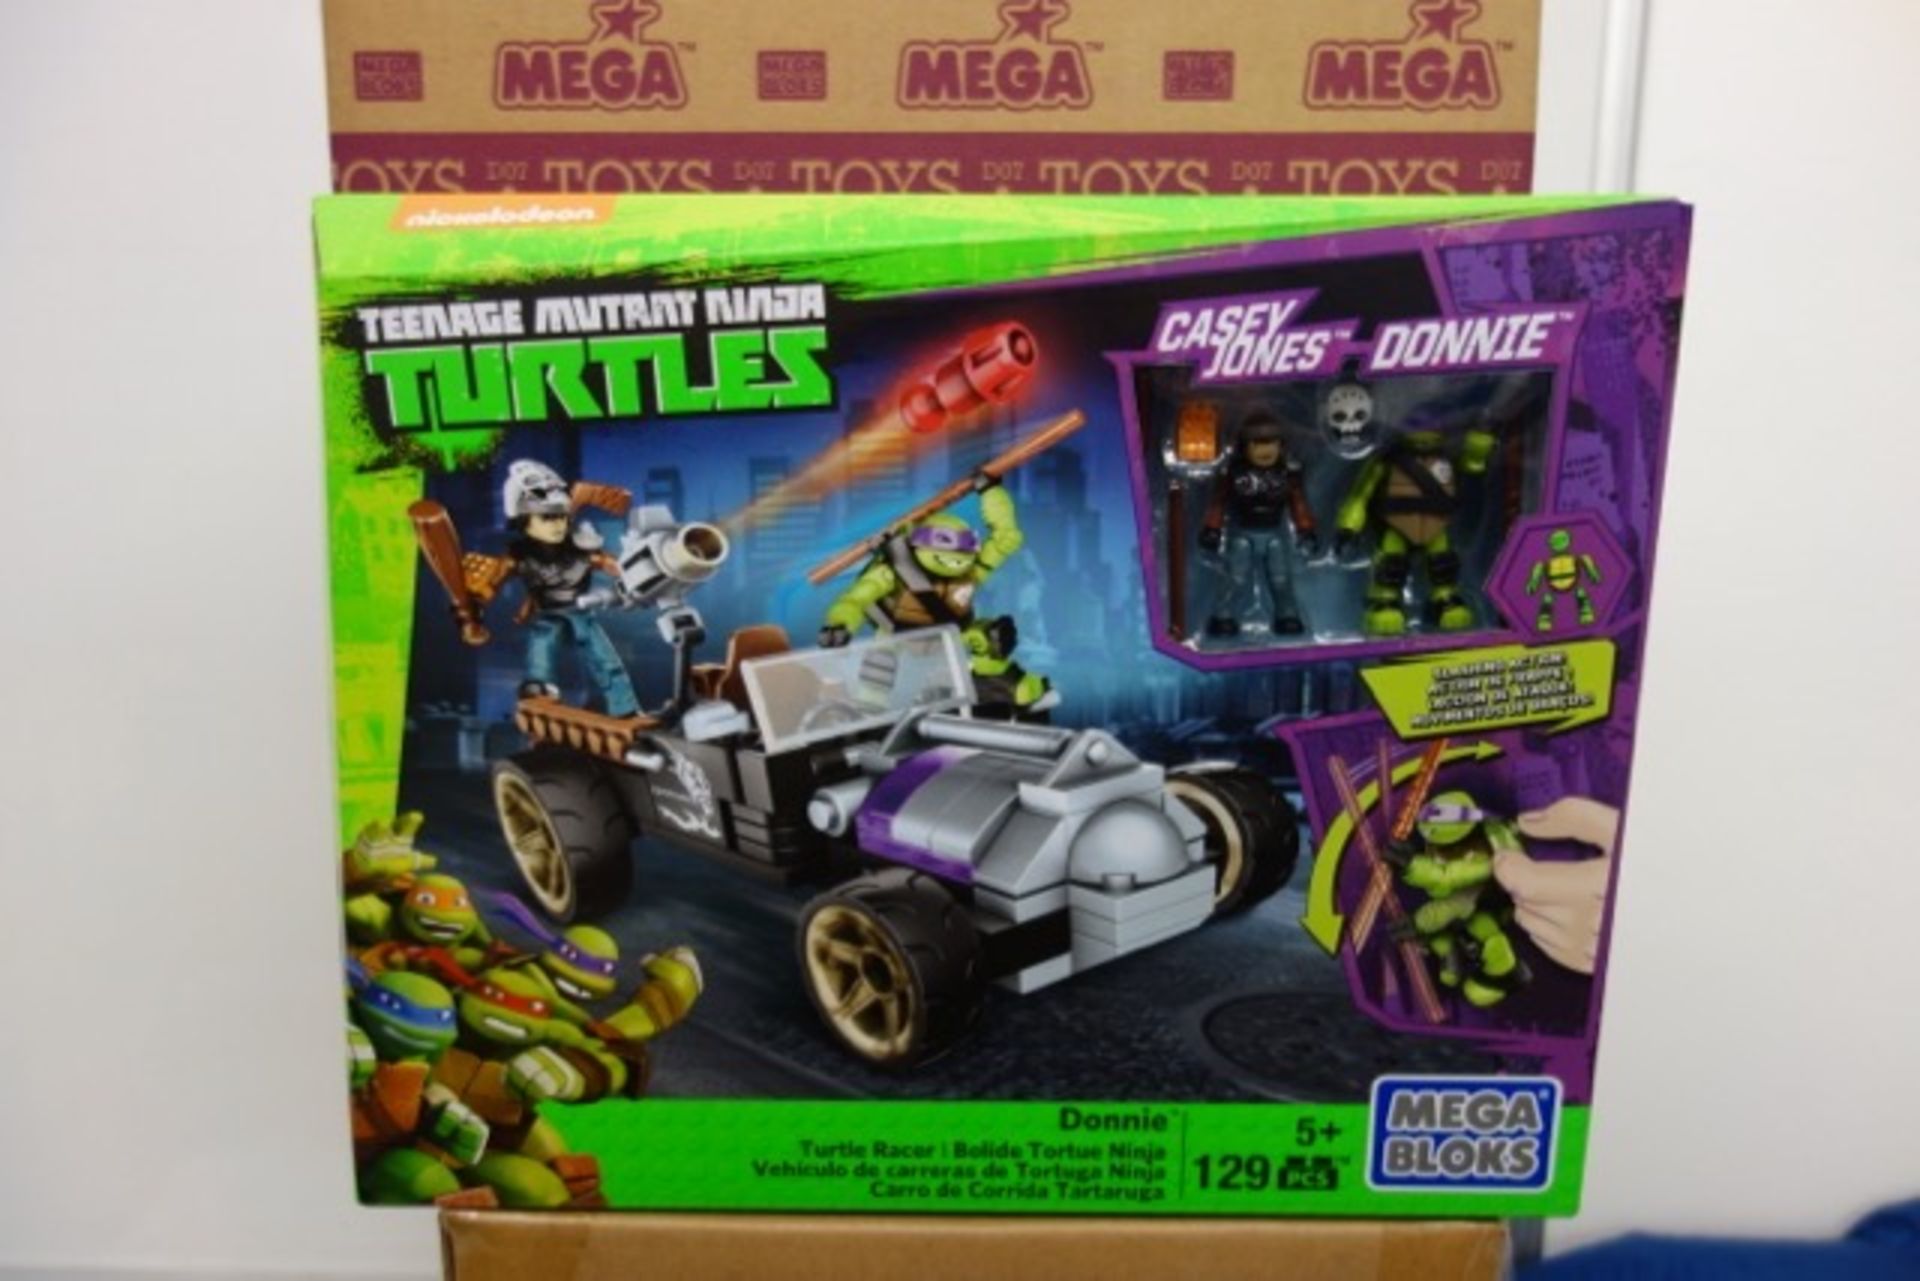 8 x Brand New Mega Bloks Teenage Mutant Ninja Turtles Donnie Turtle Racer. 129 Piece complete with